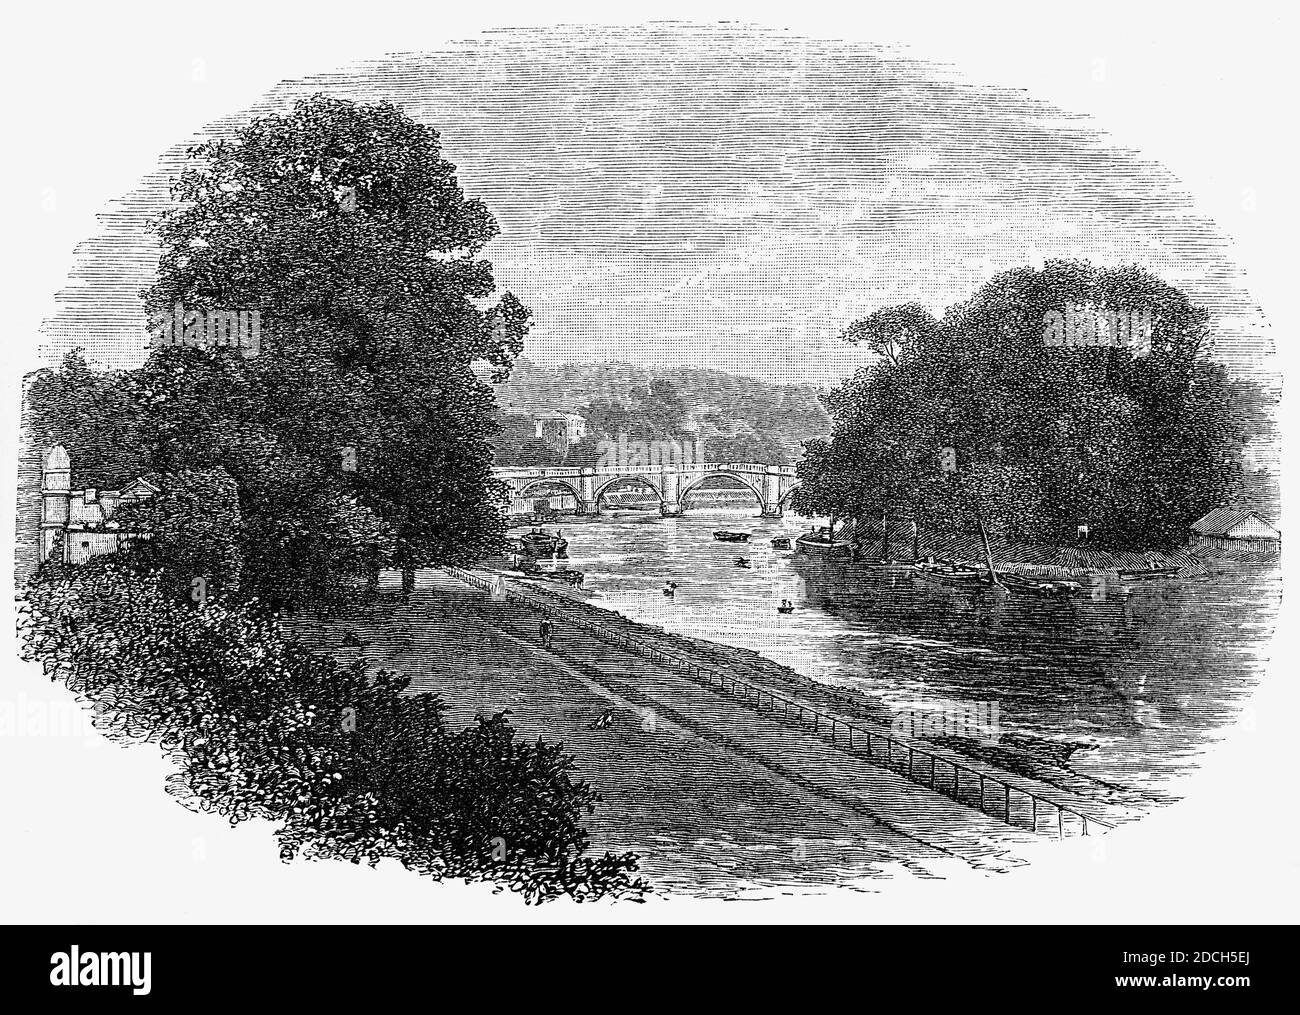 Eine Ansicht der Richmond Bridge aus dem 19. Jahrhundert, einer Steinbogenbrücke aus dem 18. Jahrhundert, die die Themse bei Richmond überquert und die beiden Hälften des heutigen Londoner Stadtteils Richmond an der Themse verbindet. Die älteste erhaltene Thames Bridge in London wurde von James Paine und Kenton Couse entworfen. Stockfoto